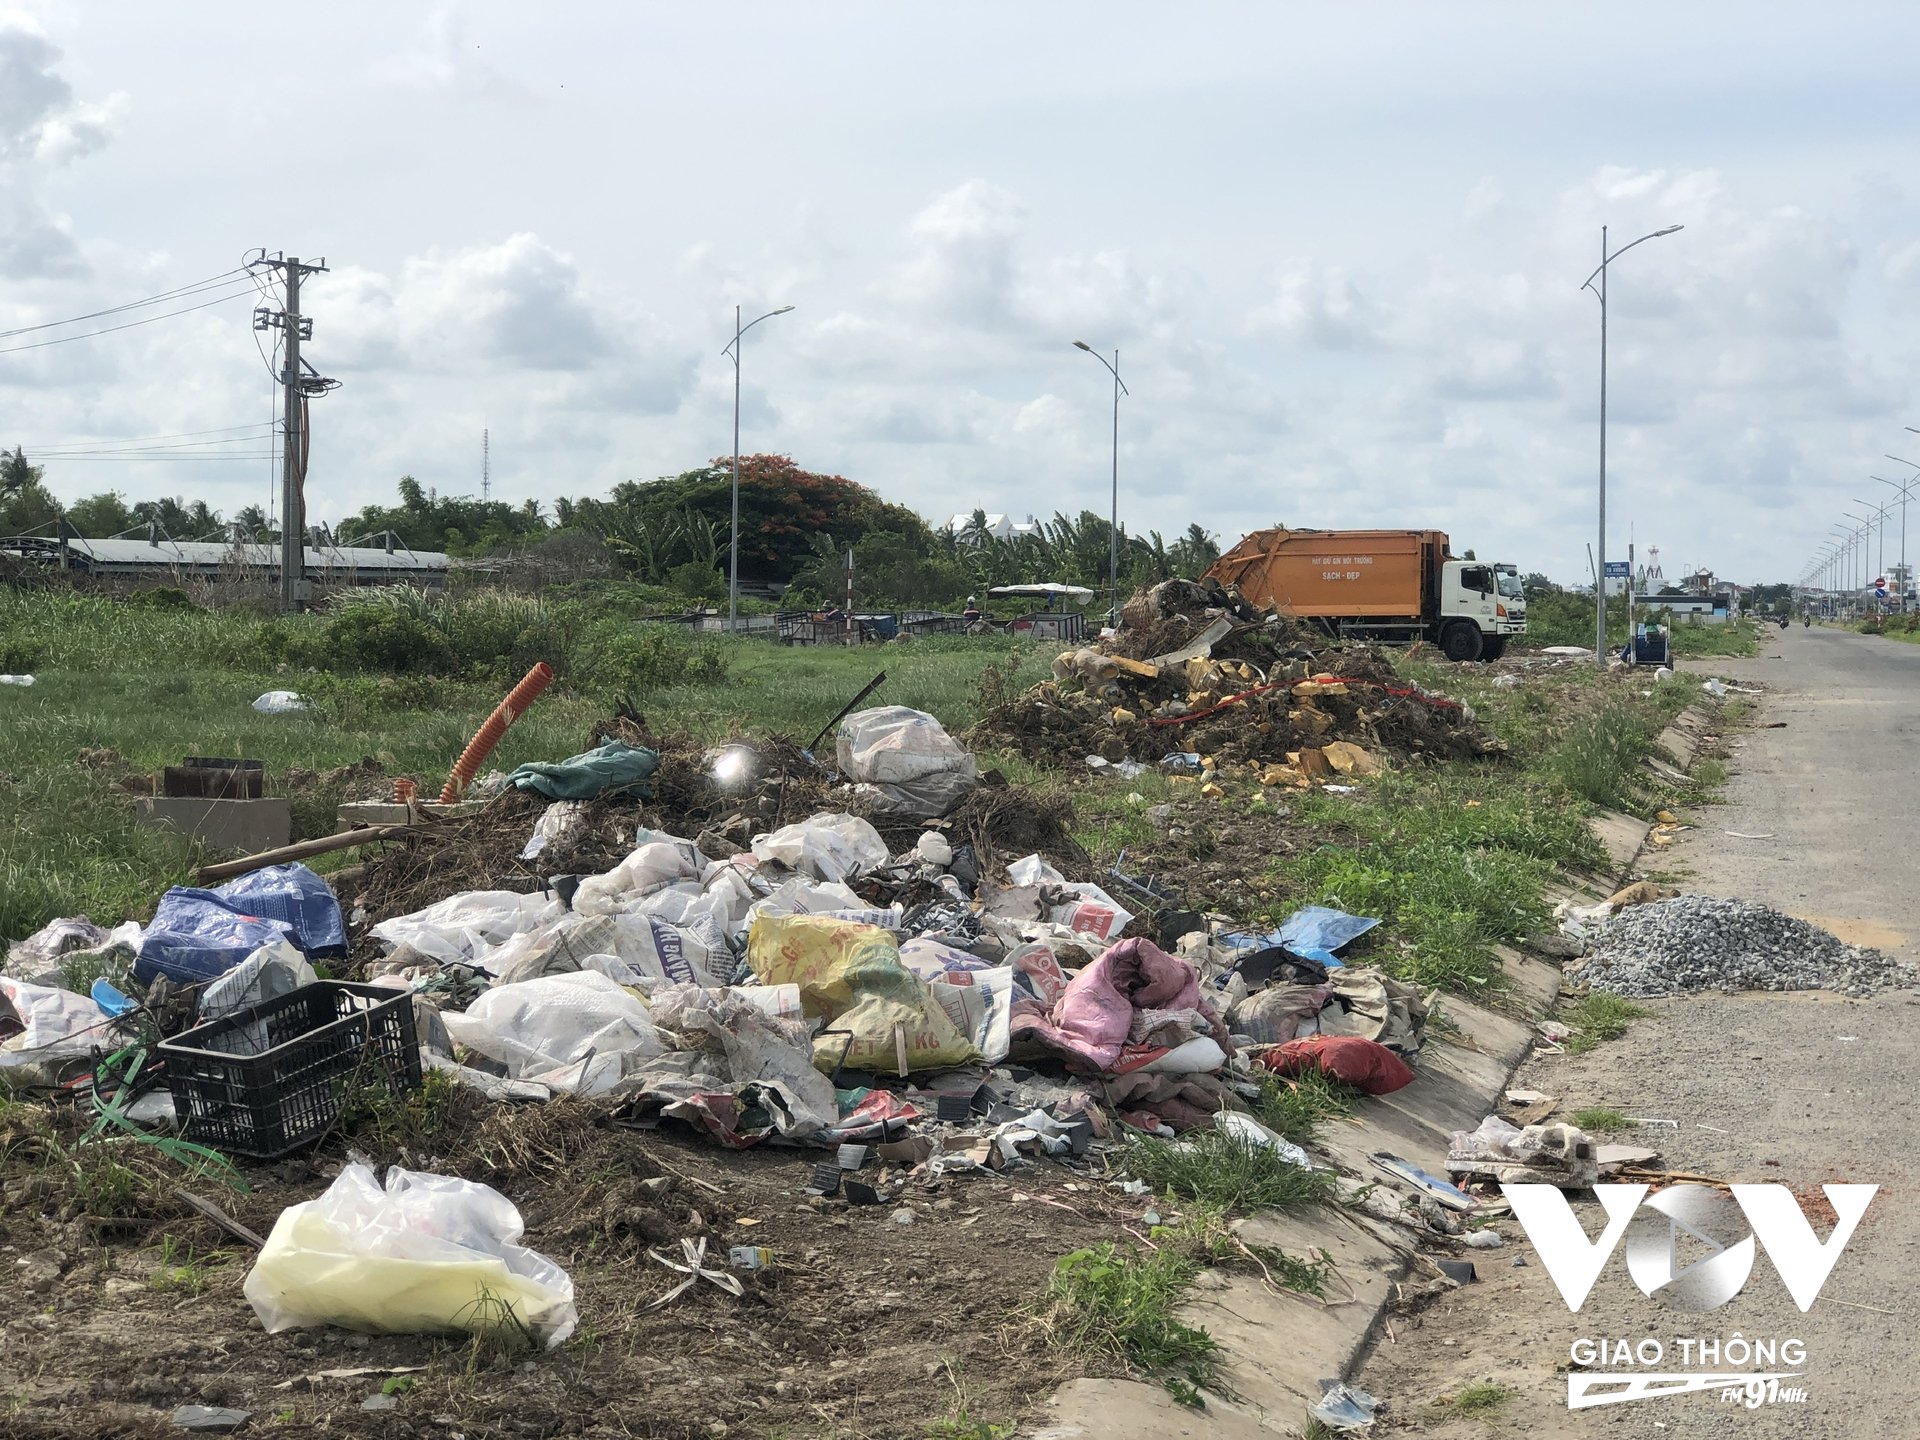 Đường Ba Tháng Hai đoạn qua giao lộ Nguyễn Bỉnh Khiêm thuộc địa bàn phường Vĩnh Quang đang trong tình trạng bị rác thải bủa vây